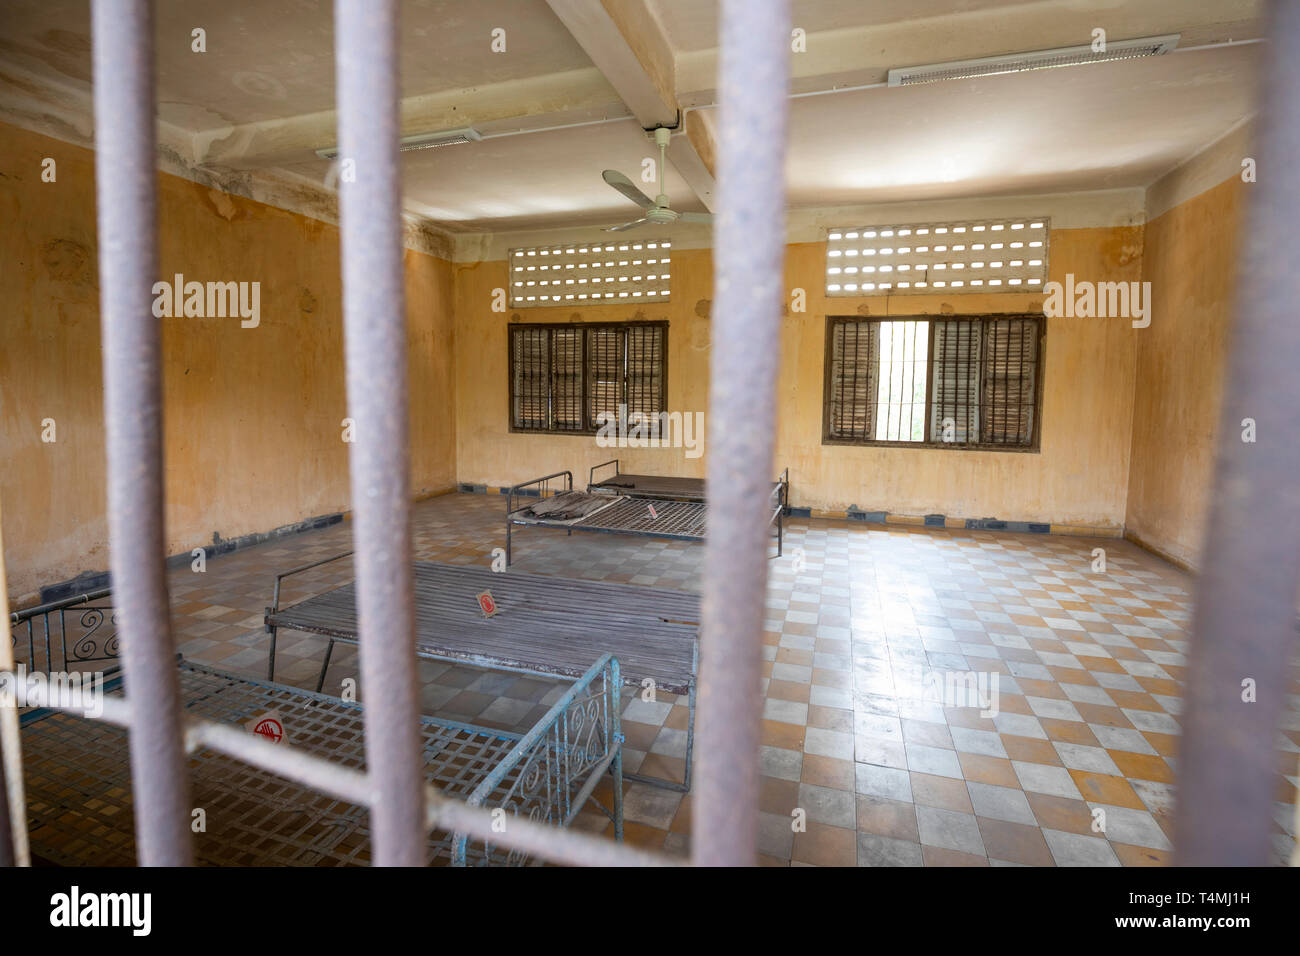 Musée du Génocide de Tuol Sleng (S-21) Prison de sécurité installé dans une ancienne école secondaire, Phnom Penh, Cambodge, Asie du Sud, Asie Banque D'Images